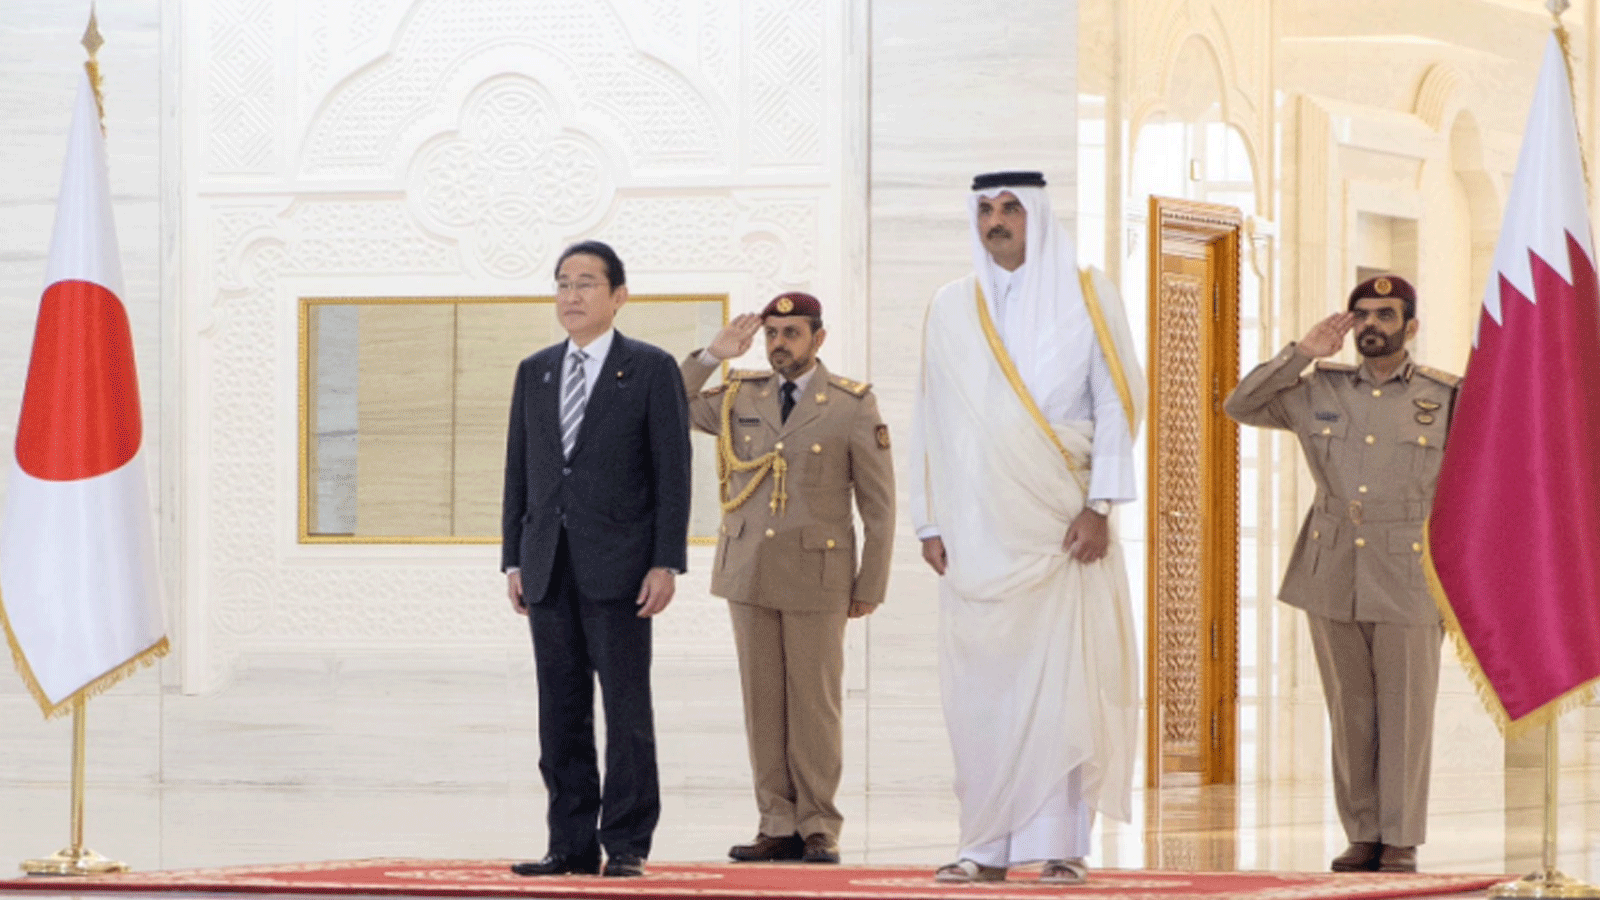 رئيس وزراء اليابان فوميو كيشيدا يختتم جولته الخليجية في قطر